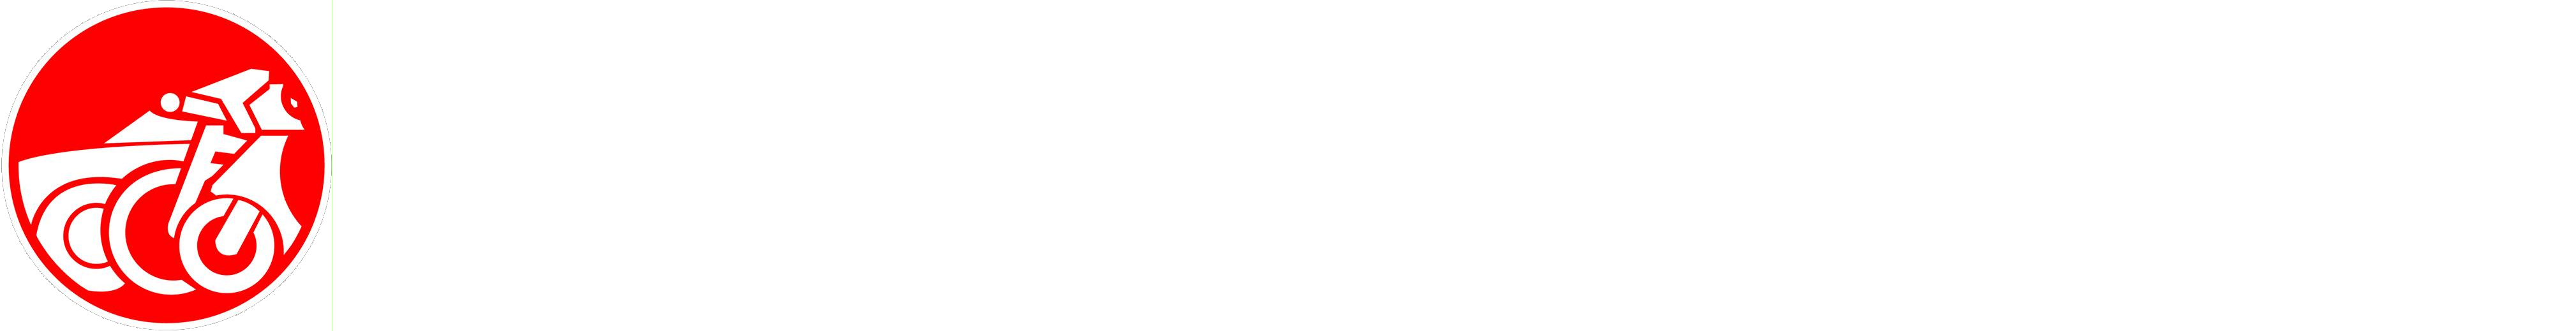 Jost Auto, Zweirad & mehr logo